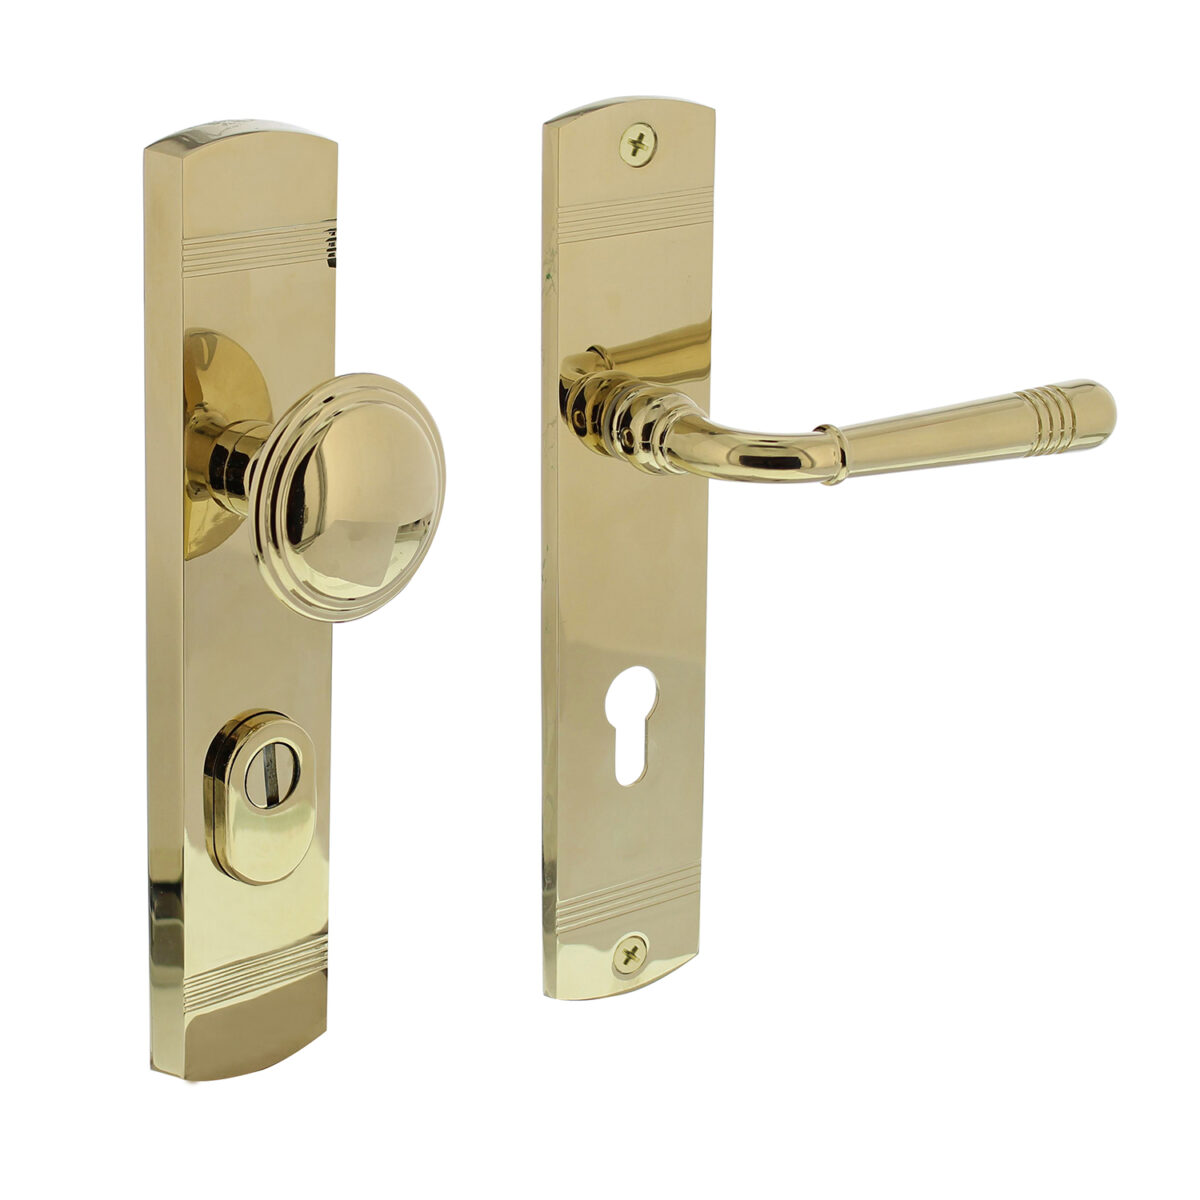 Intersteel Security fittings door handles replaced rear door fittings